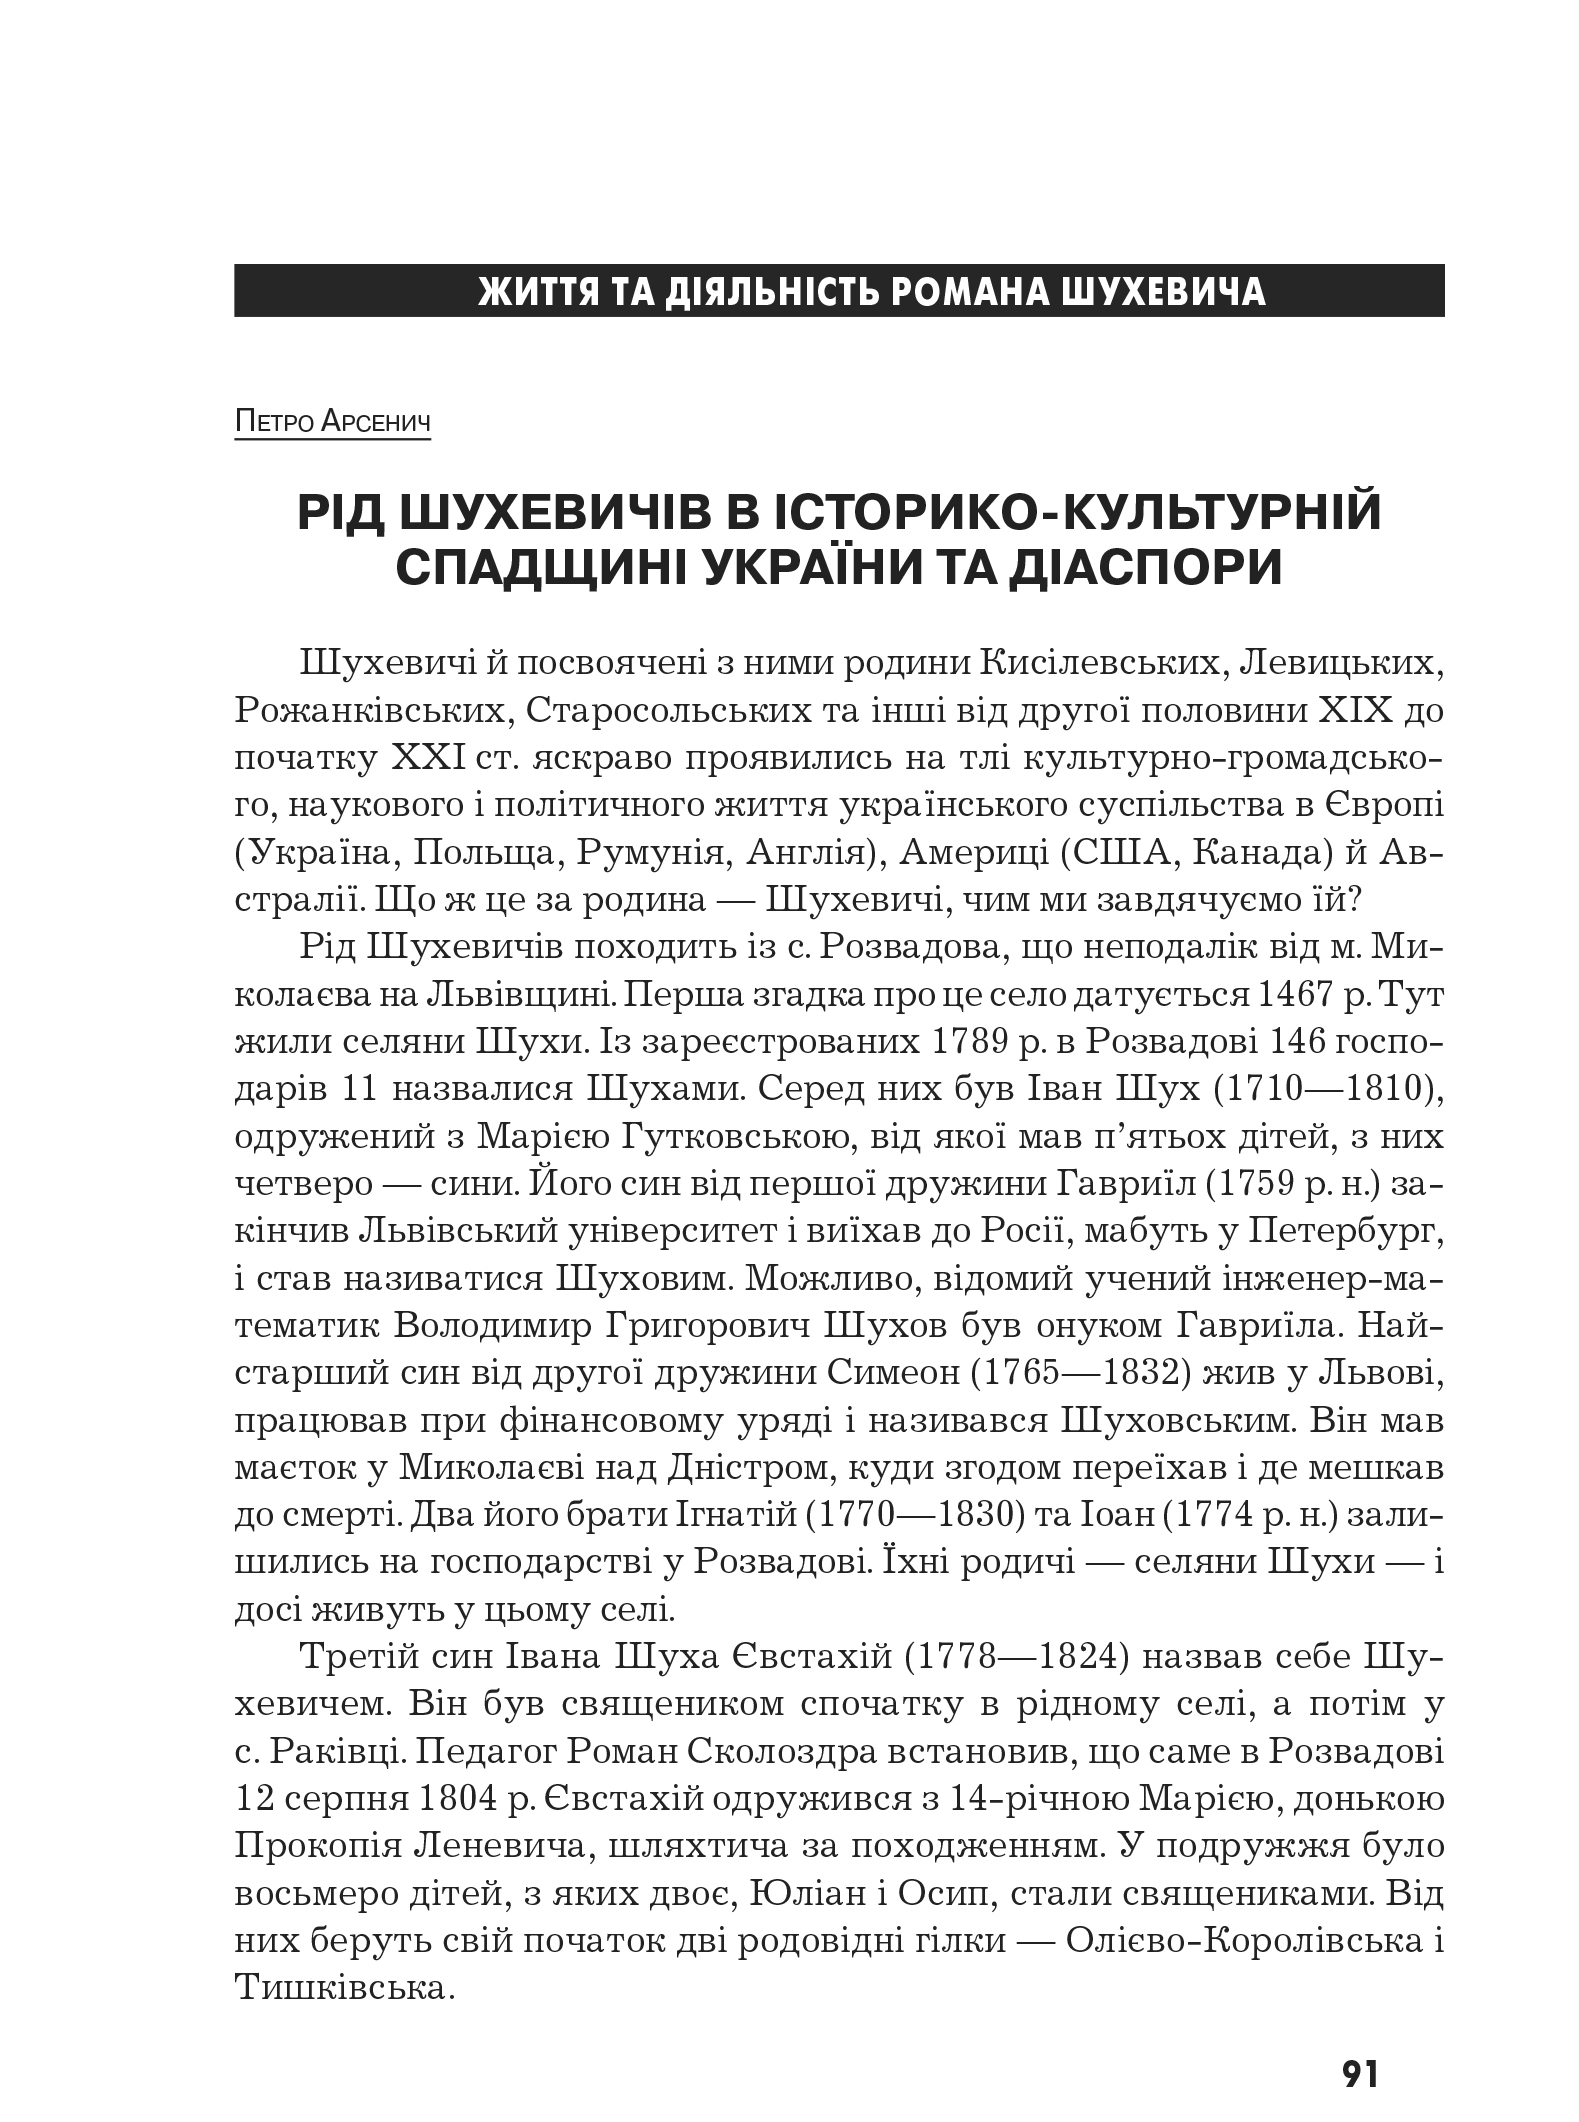 Український визвольний рух №10, ст. 91 - 100